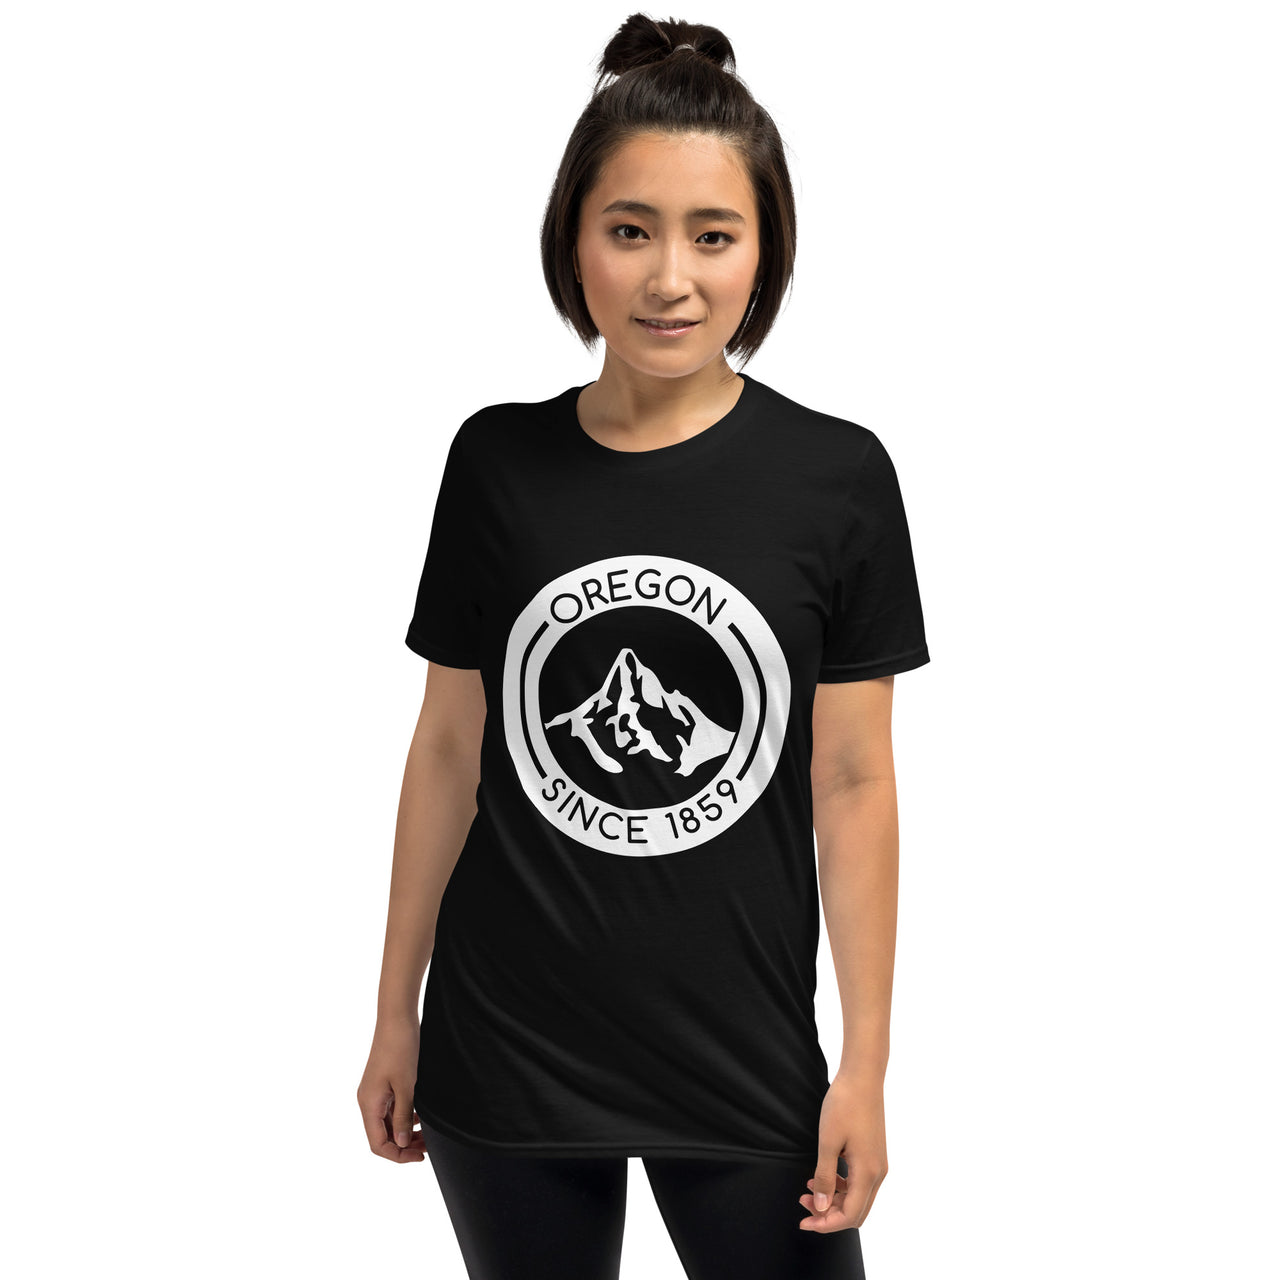 Oregon Since 1859 - Unisex T-Shirt